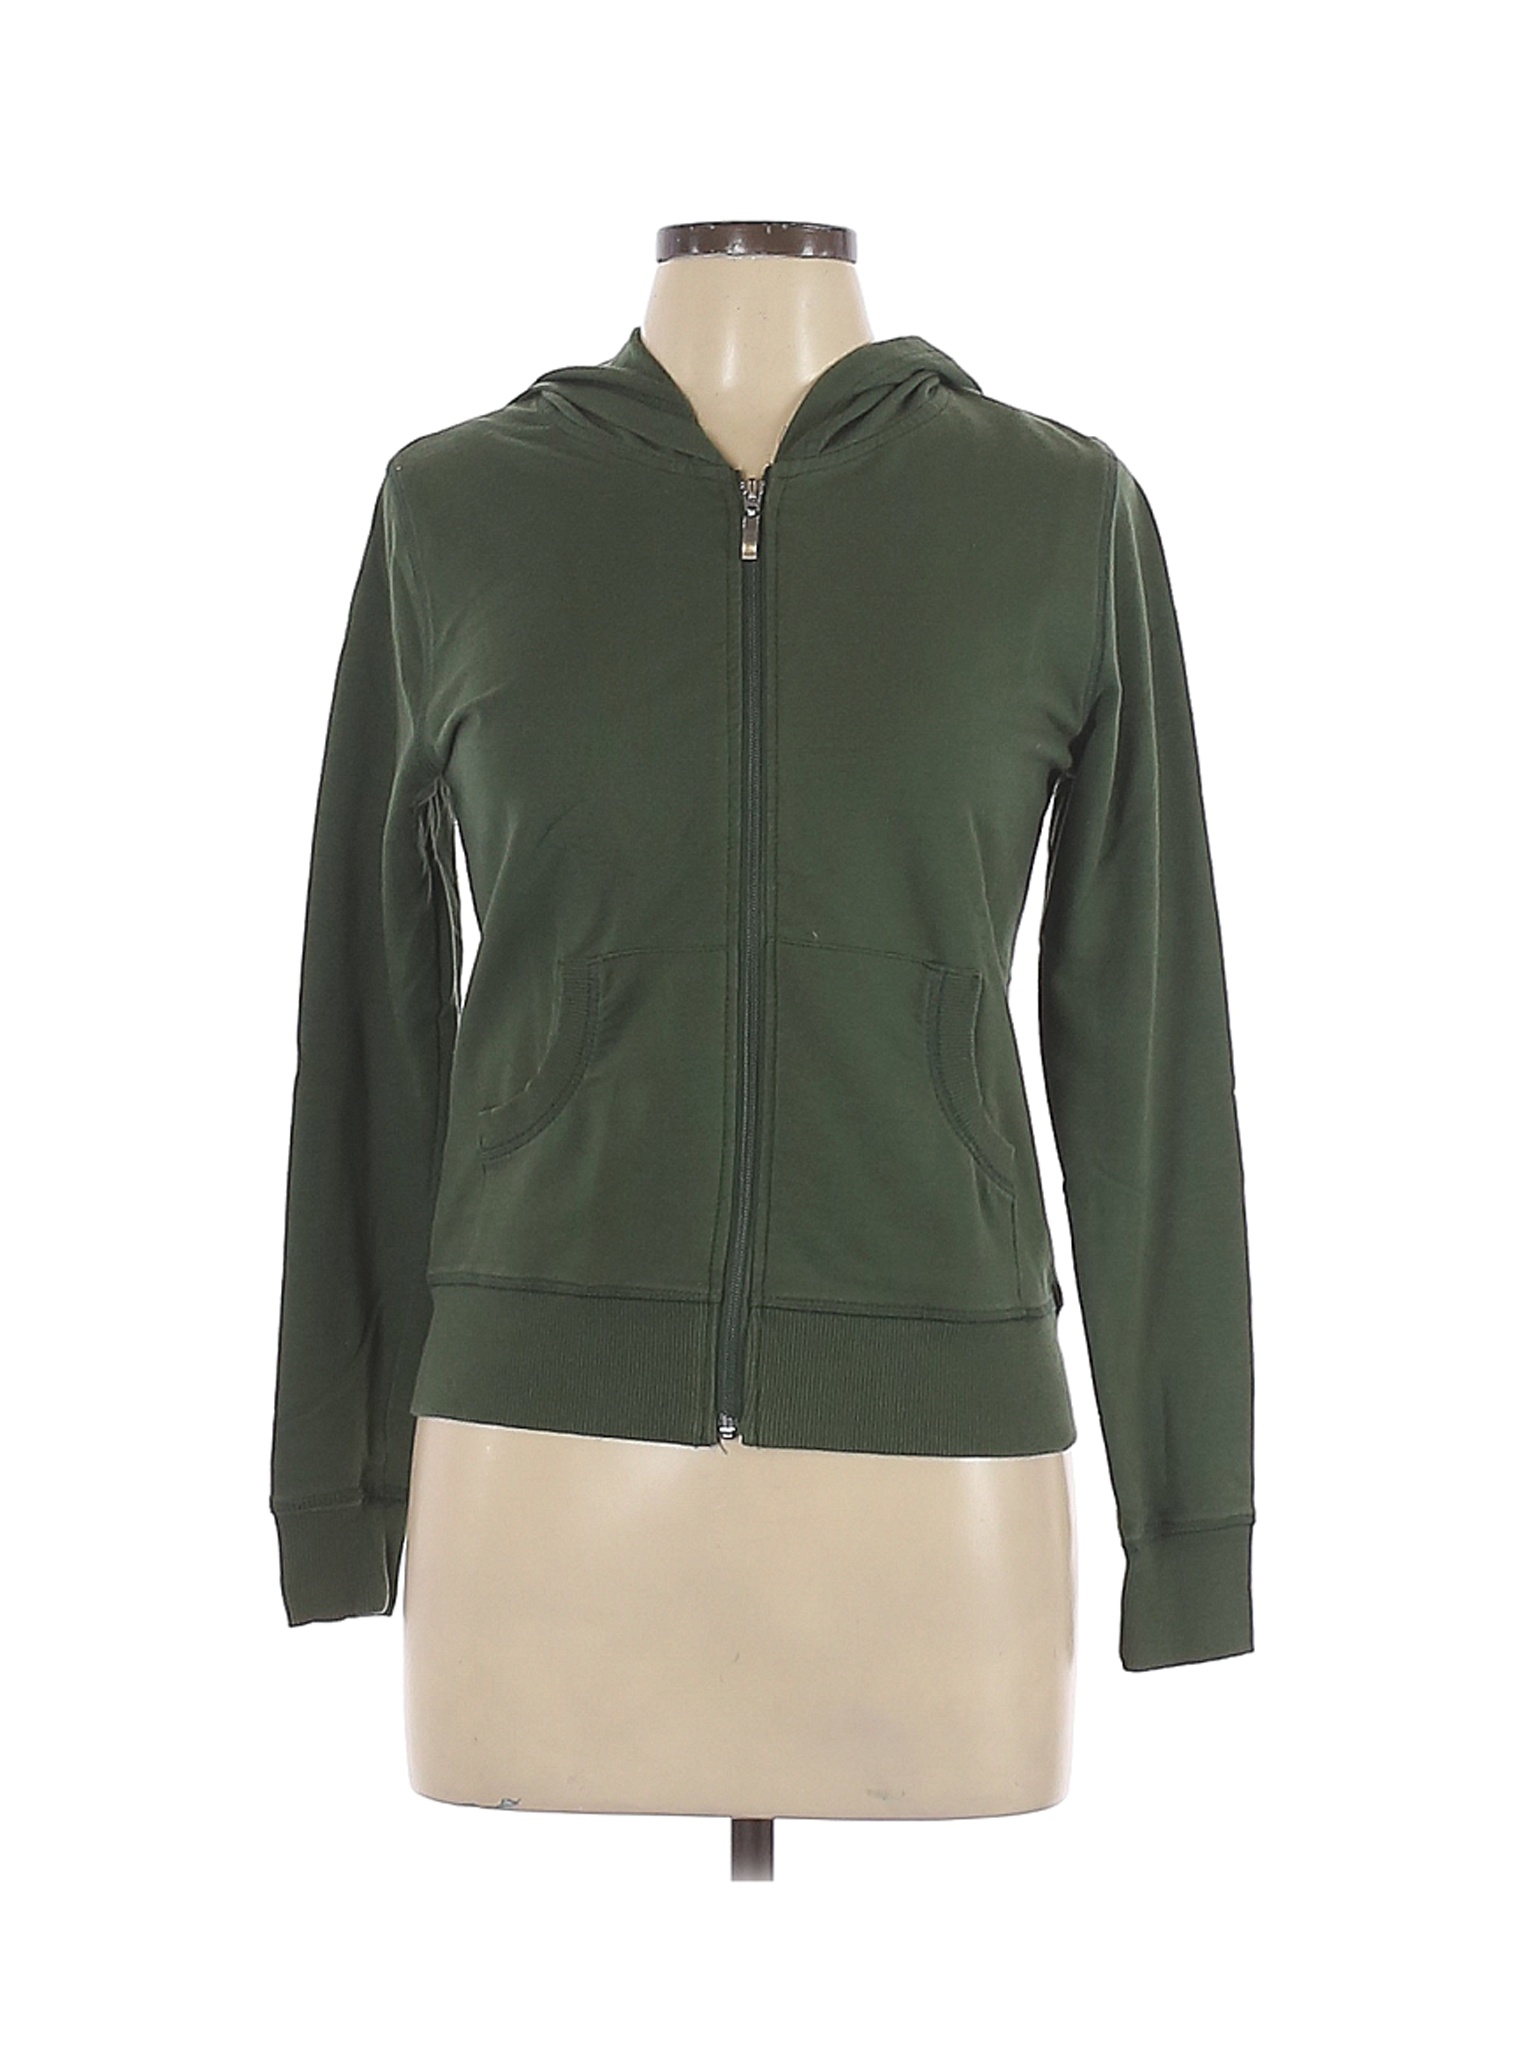 Assorted Brands Women Green Zip Up Hoodie L | eBay